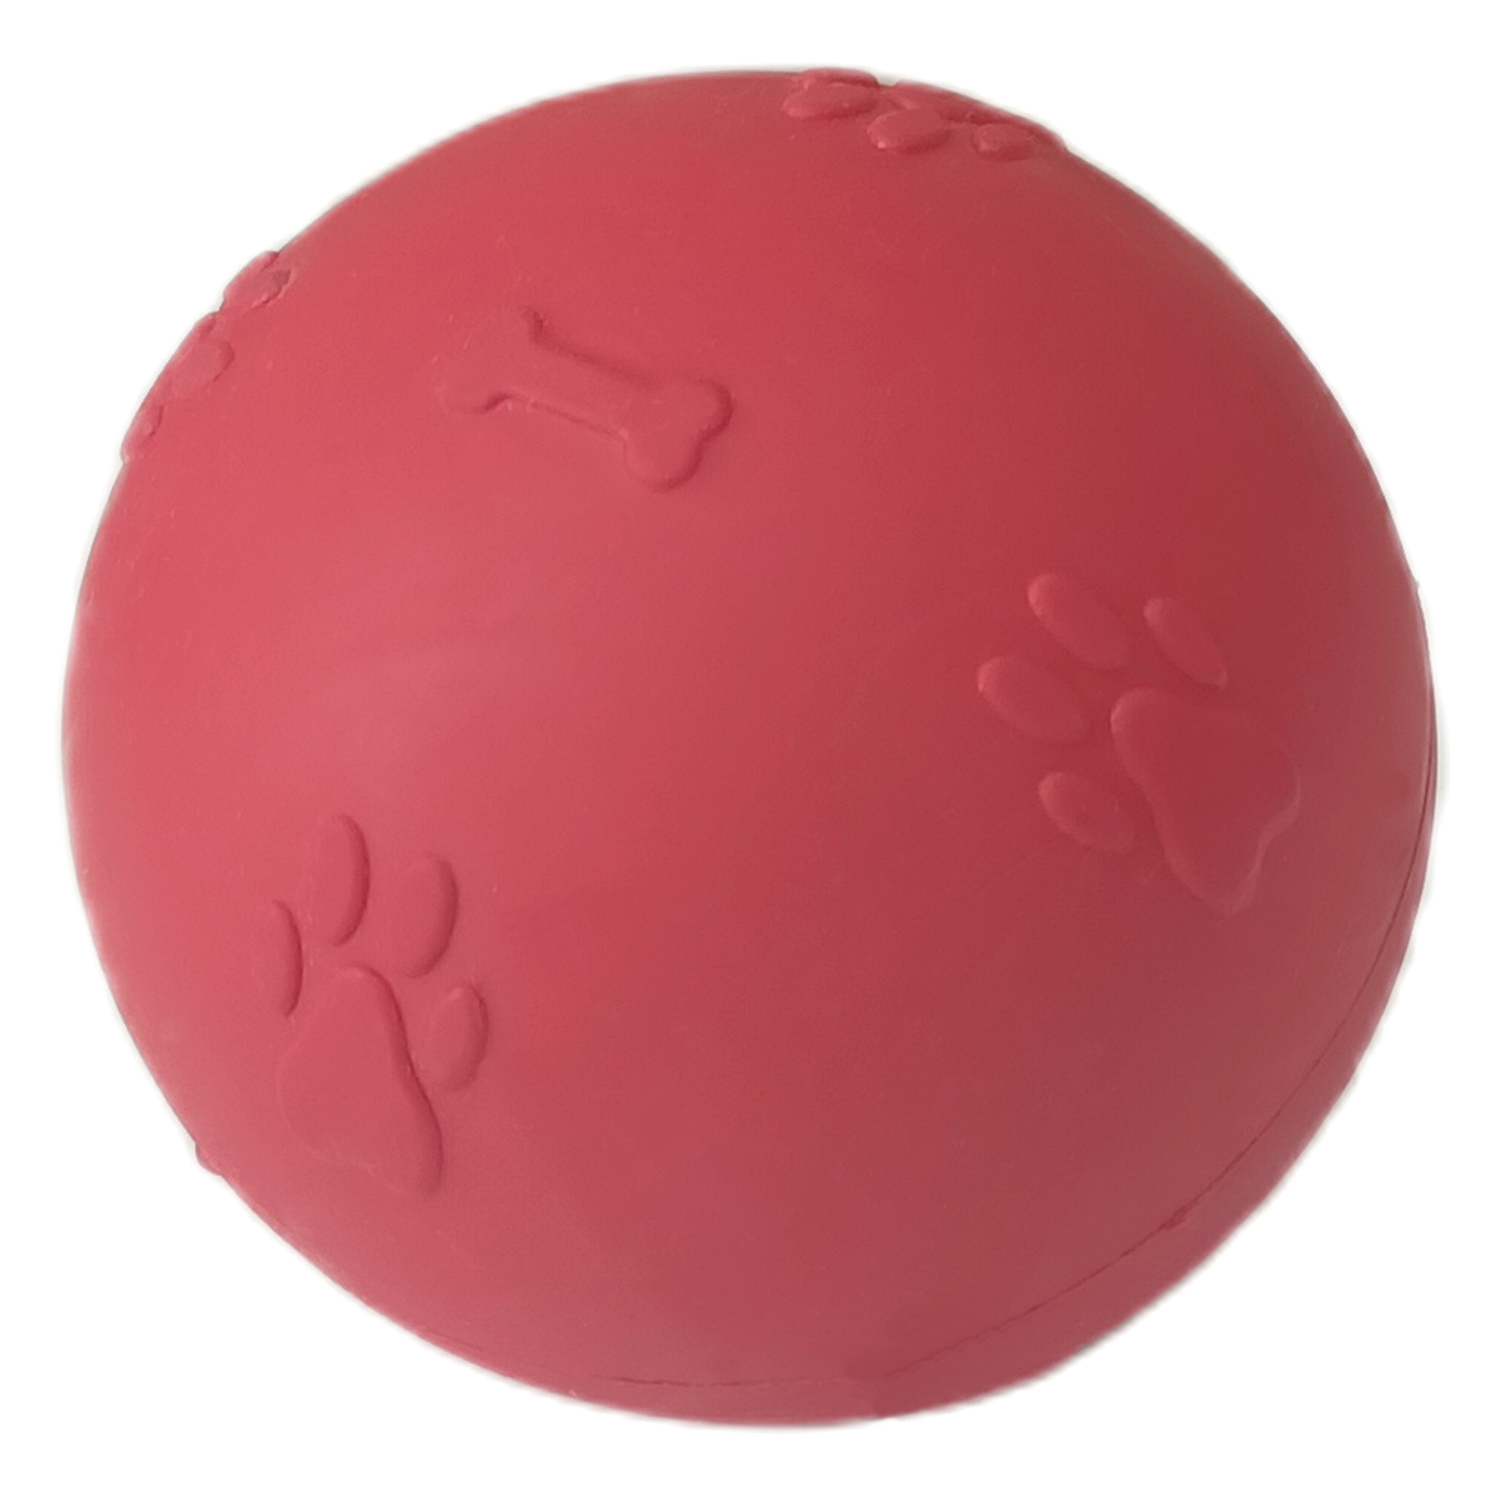 CLZ205 Pati Desenli Sert Köpek Oyun Topu 7 cm Medium Kırmızı